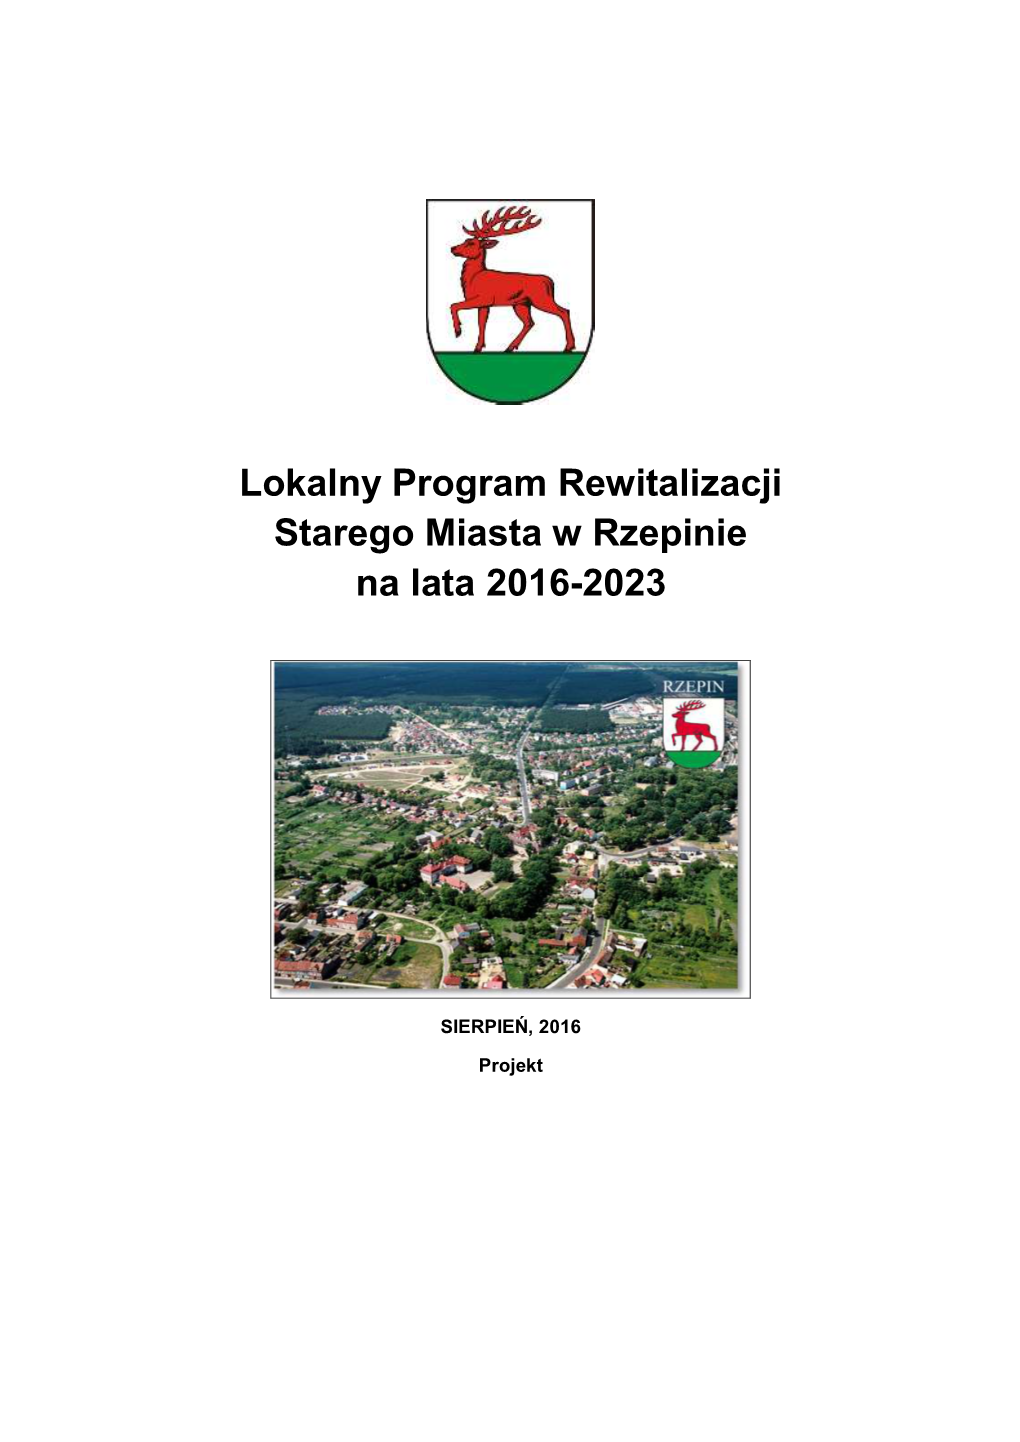 Lokalny Program Rewitalizacji Miasta Rzepin Na Lata 2009